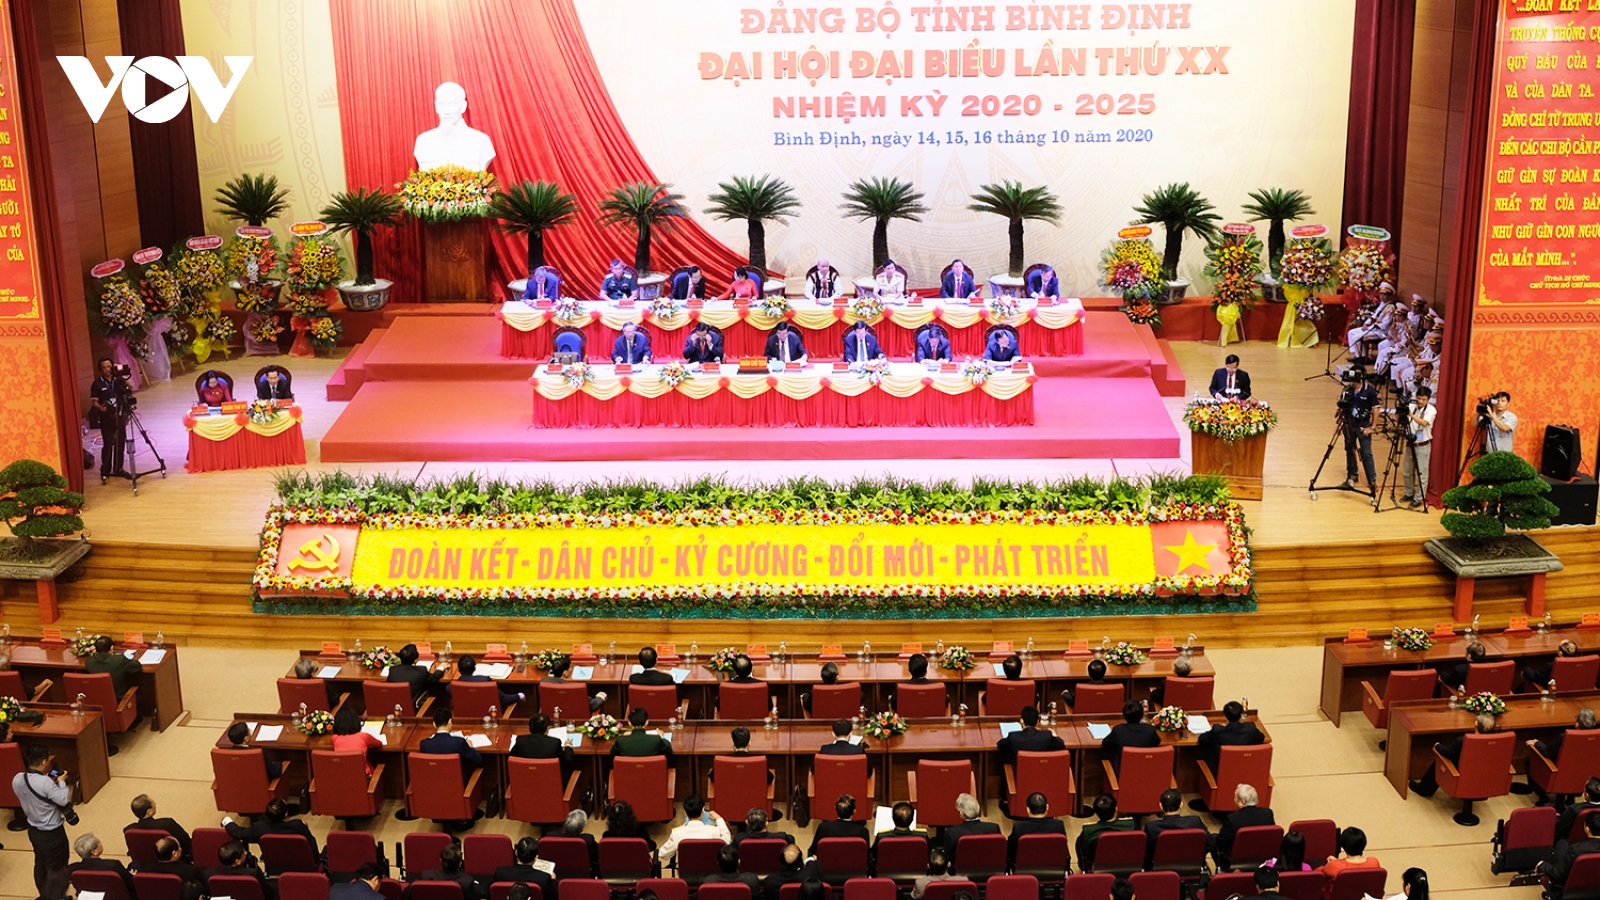 Khai mạc Đại hội Đảng bộ tỉnh Bình Định lần thứ XX